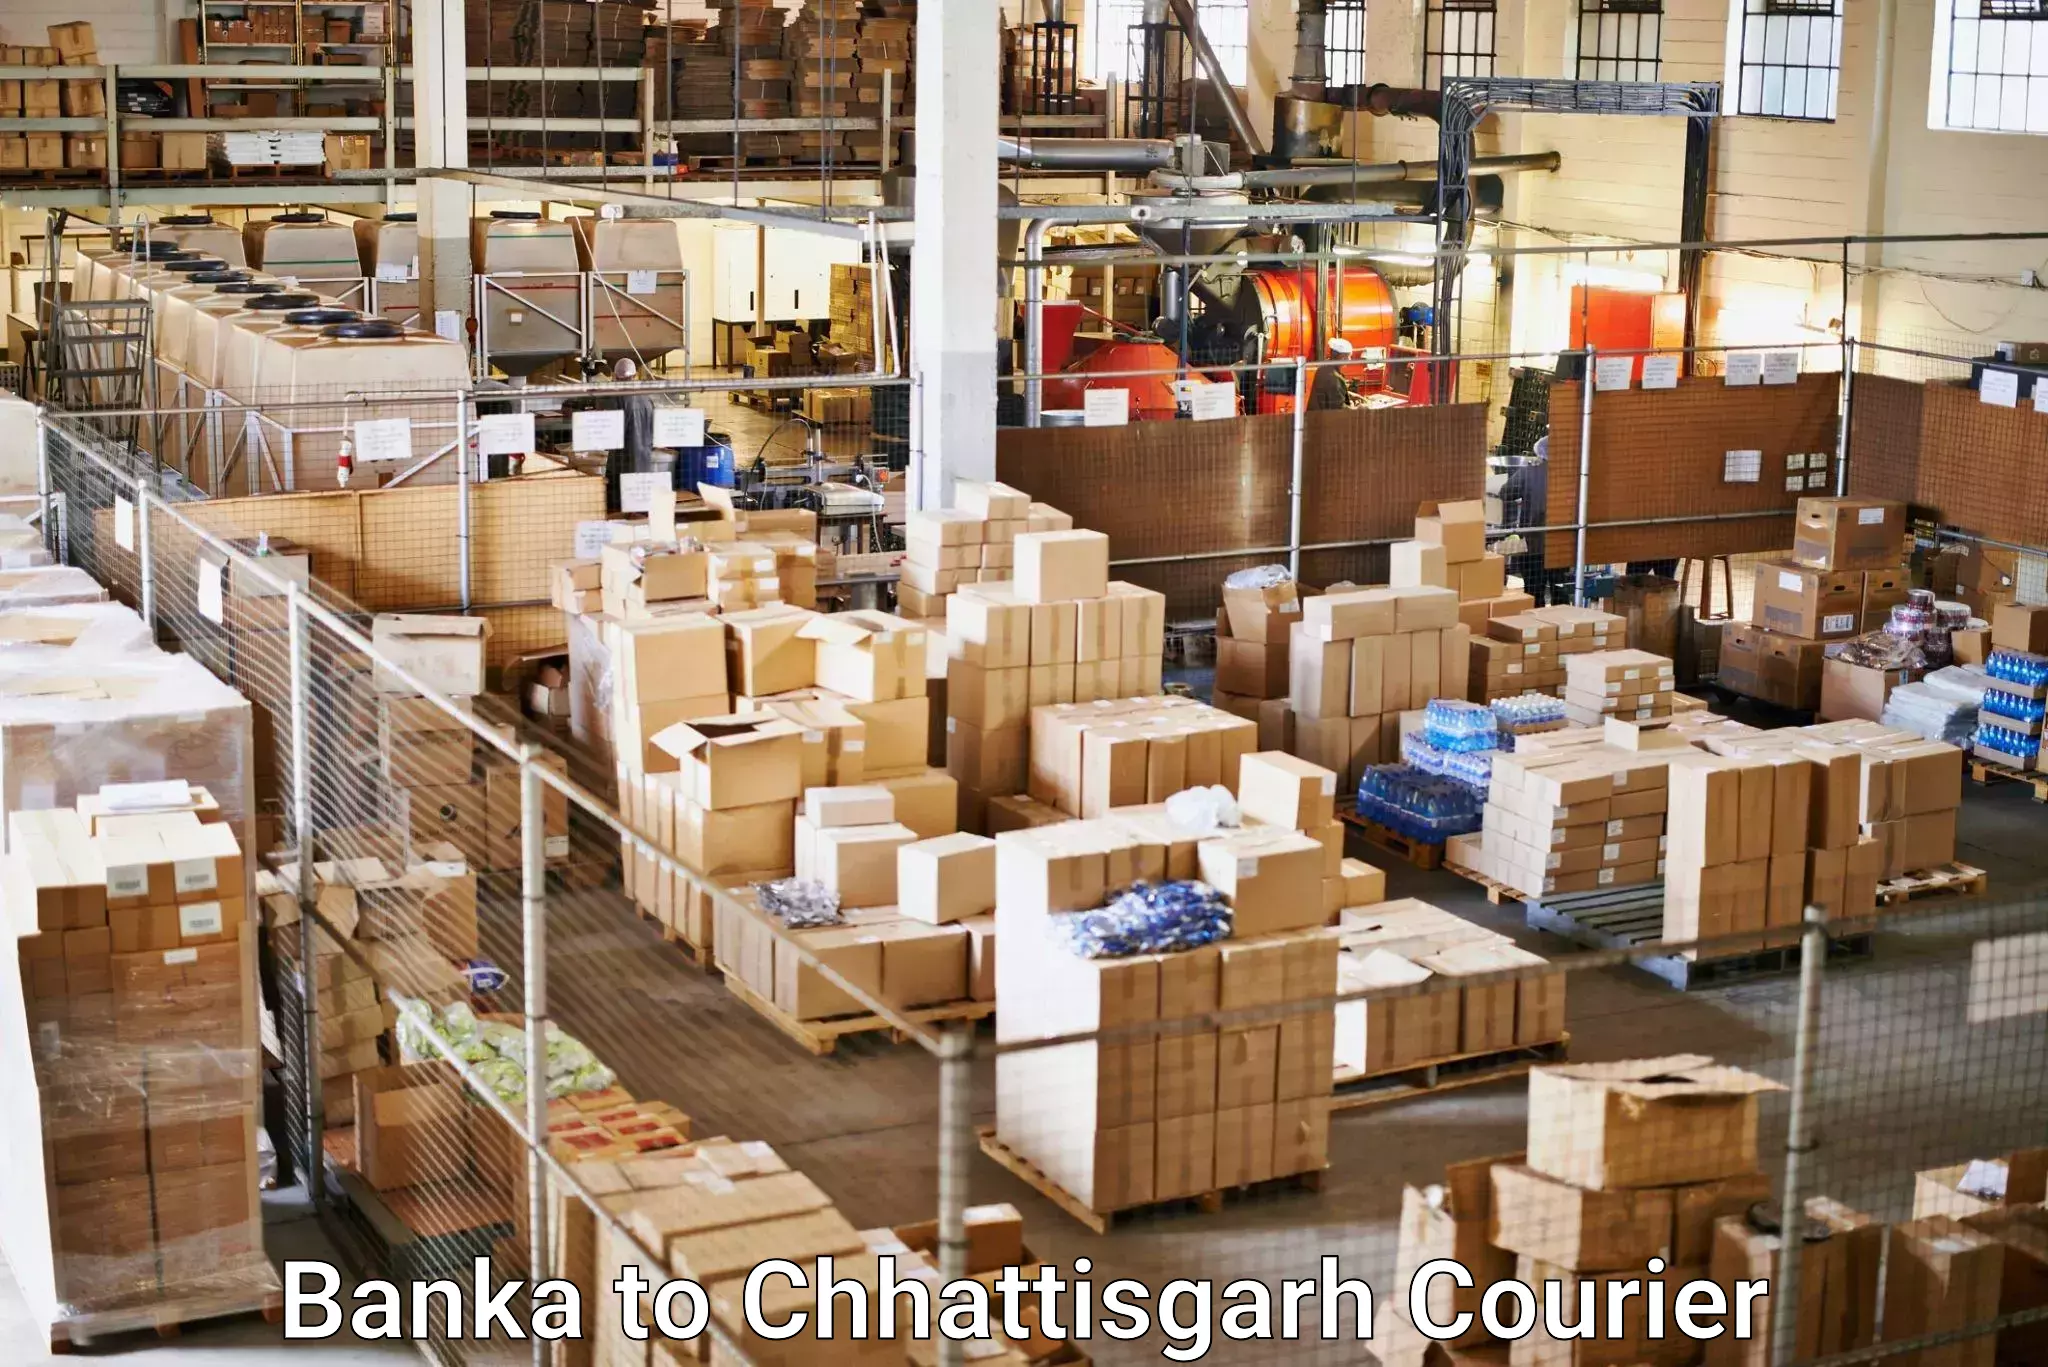 Automated shipping processes Banka to Lailunga